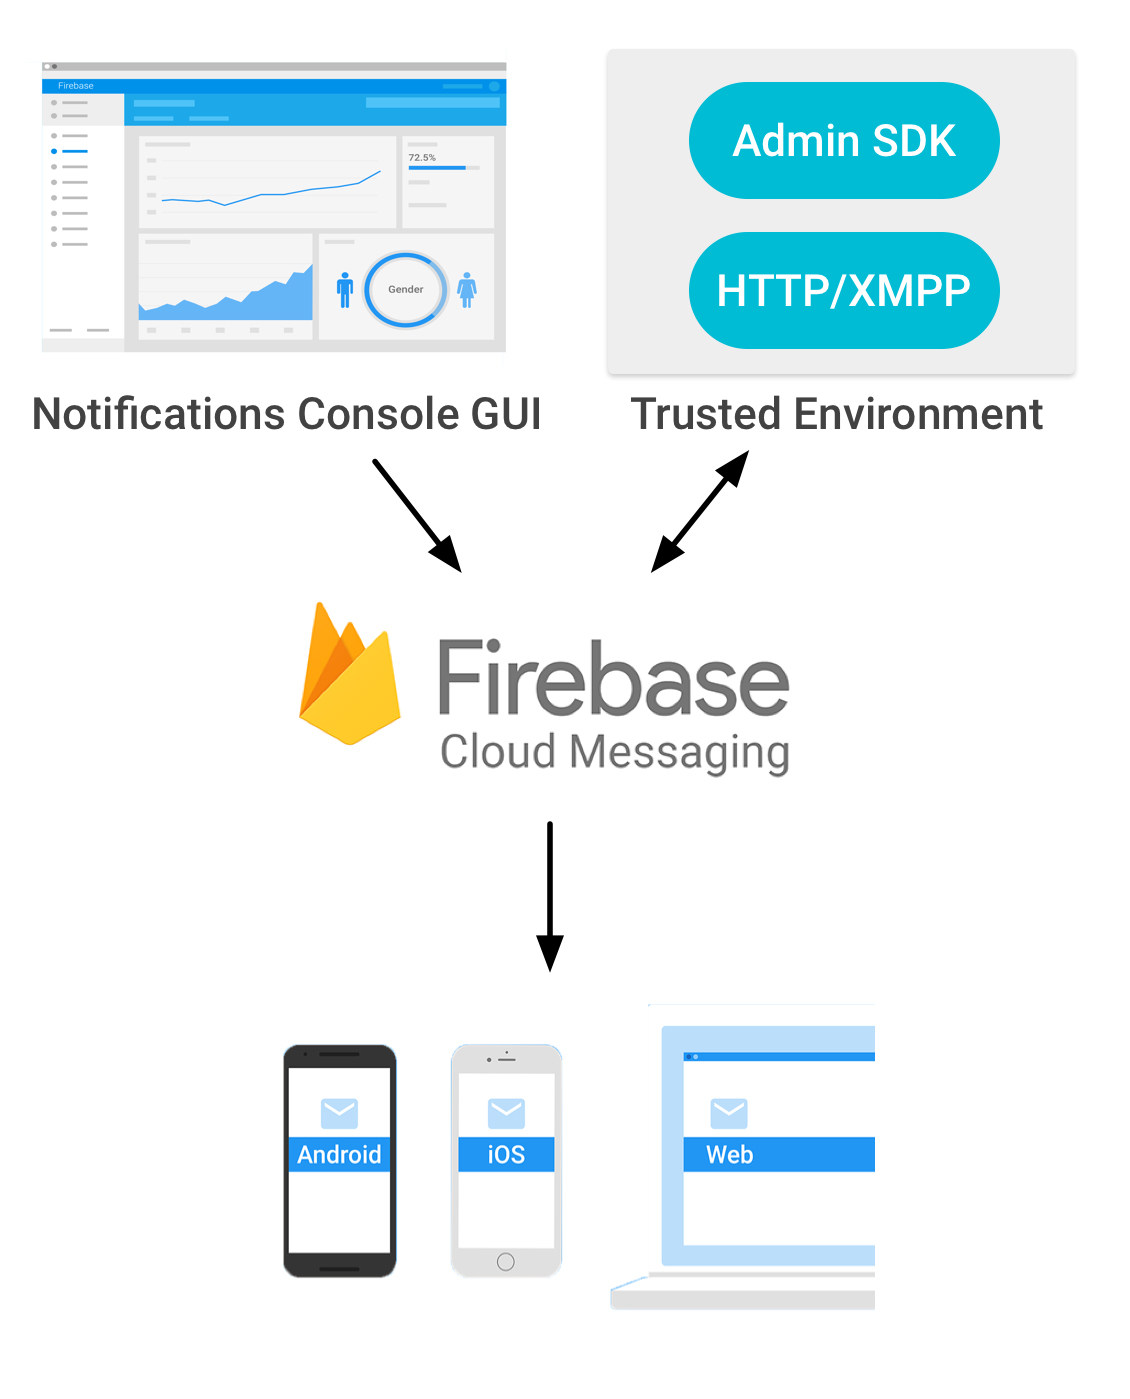 Firebase Cloud MessagingiFCMj̎dg݁ioTFGooglej